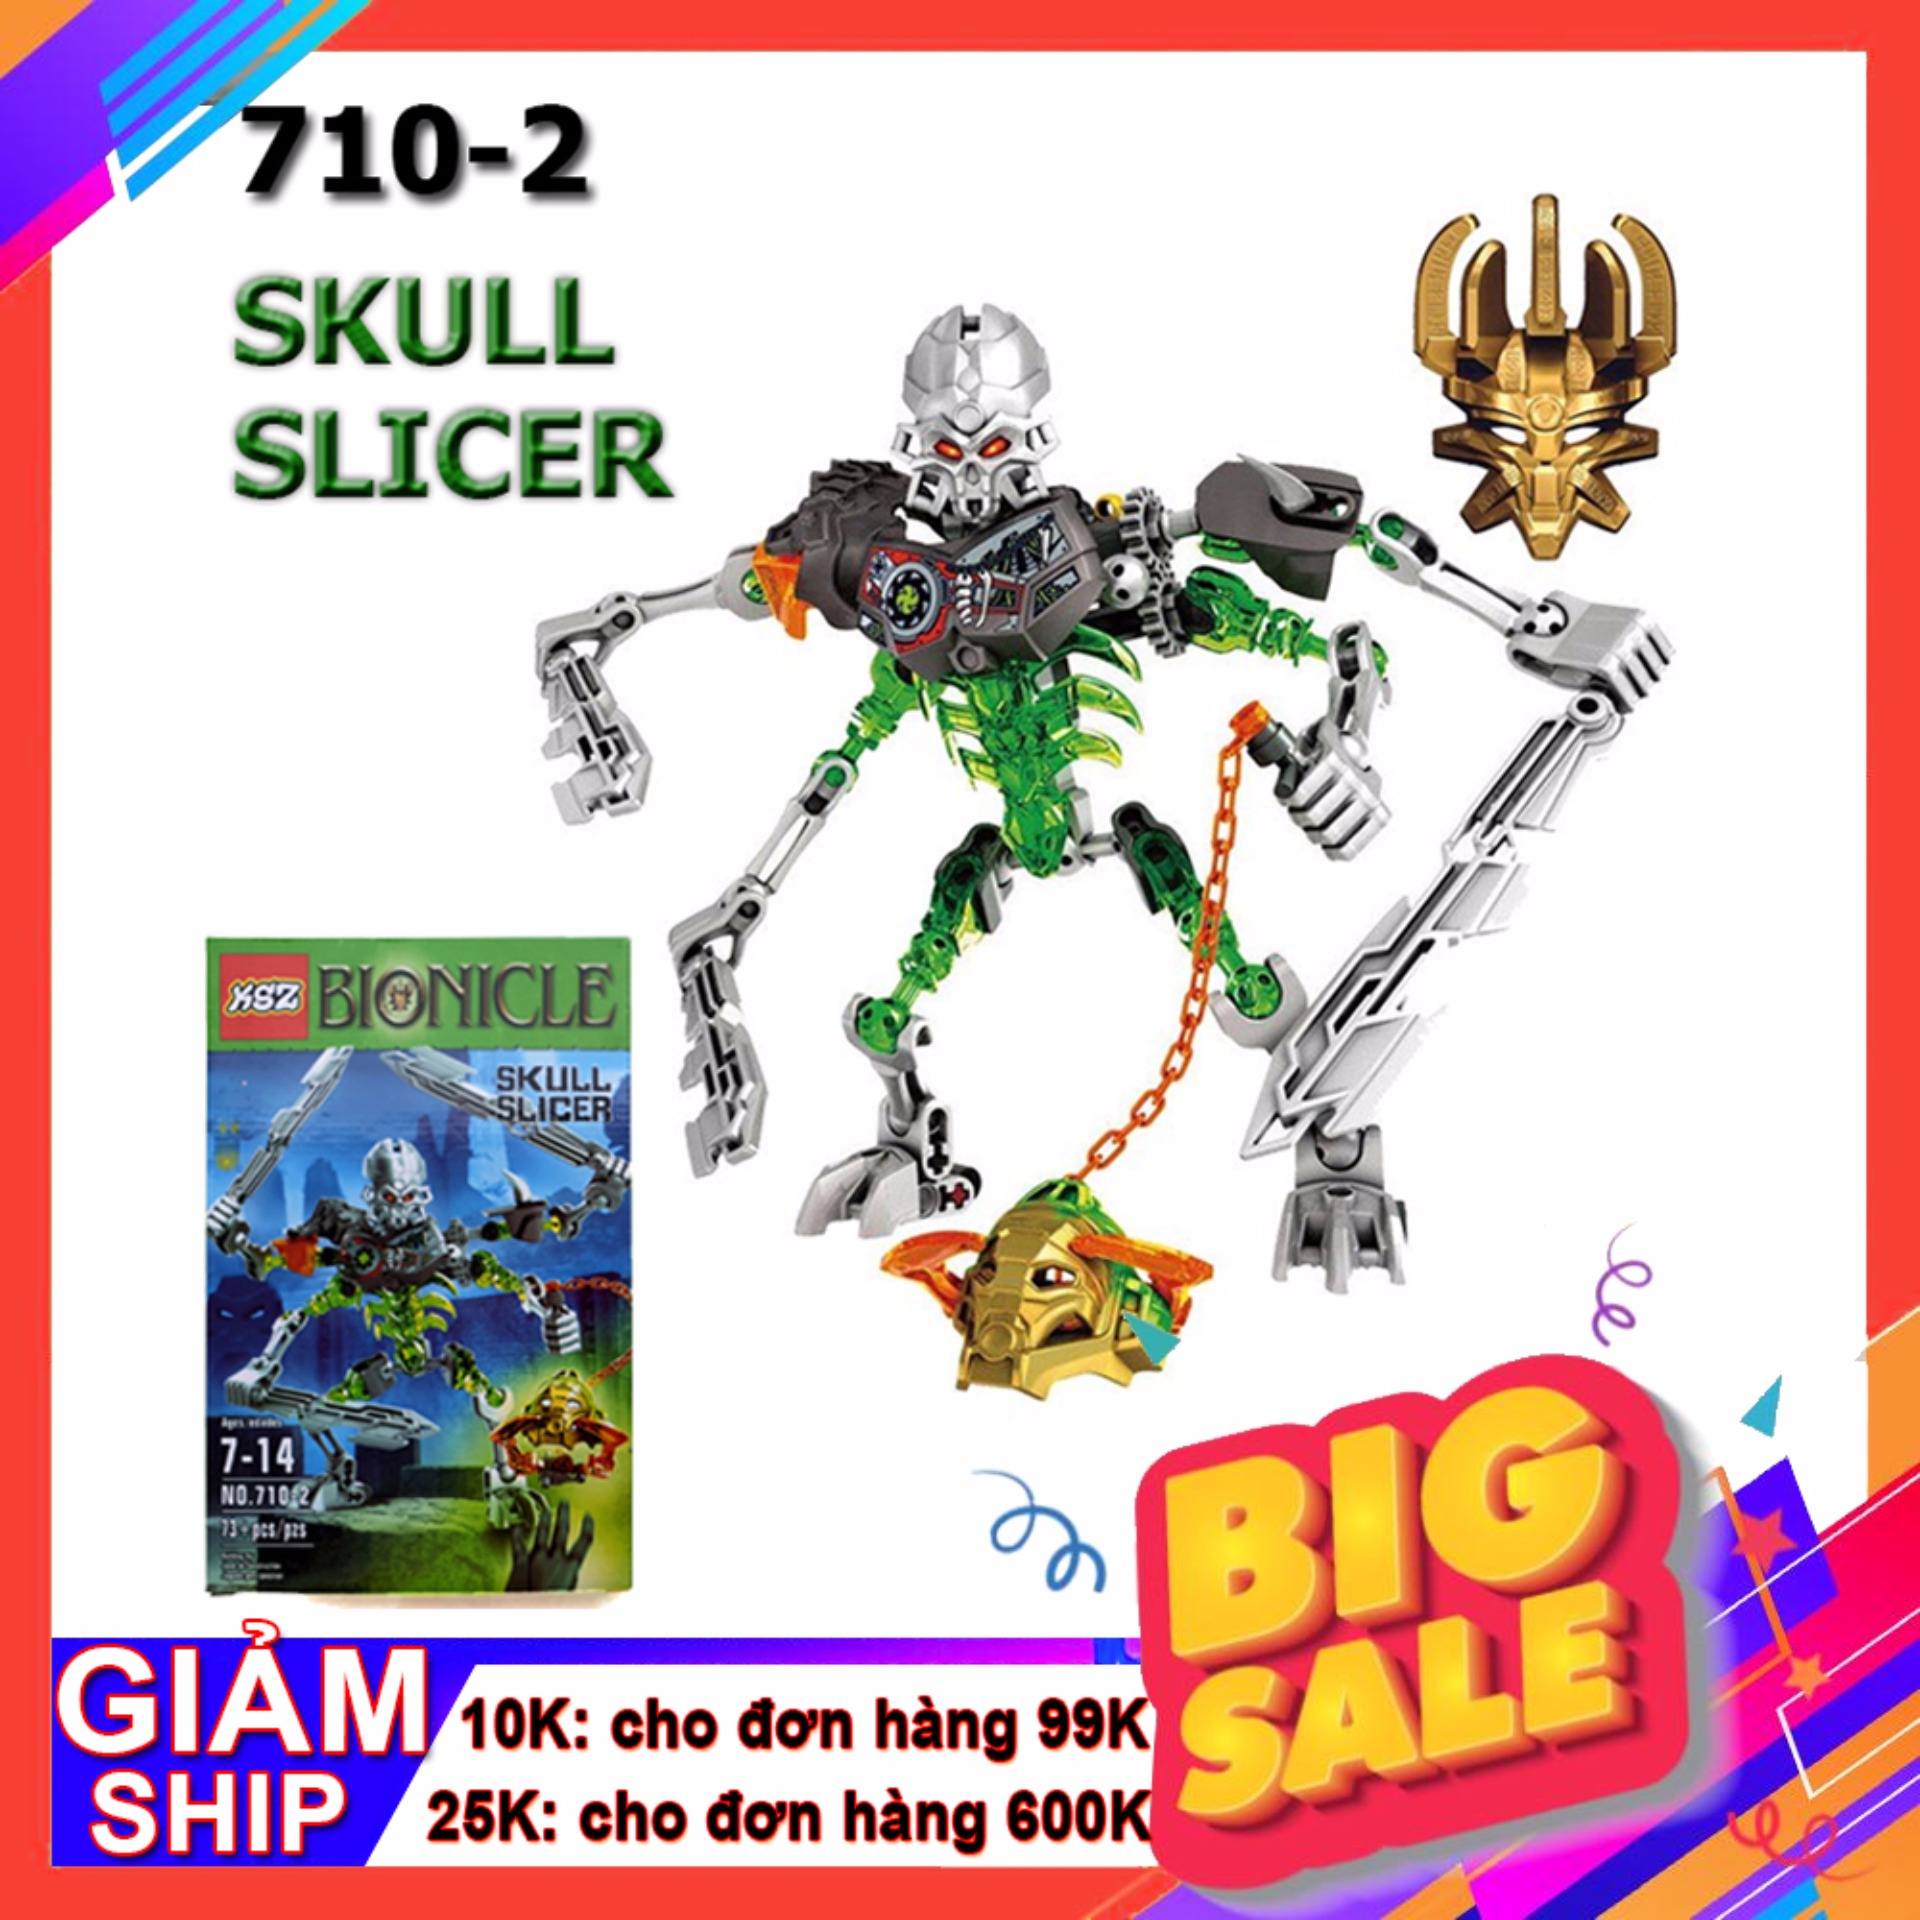 HCMĐồ chơi ghép hình Bionicle 710-2 Skull Slicer